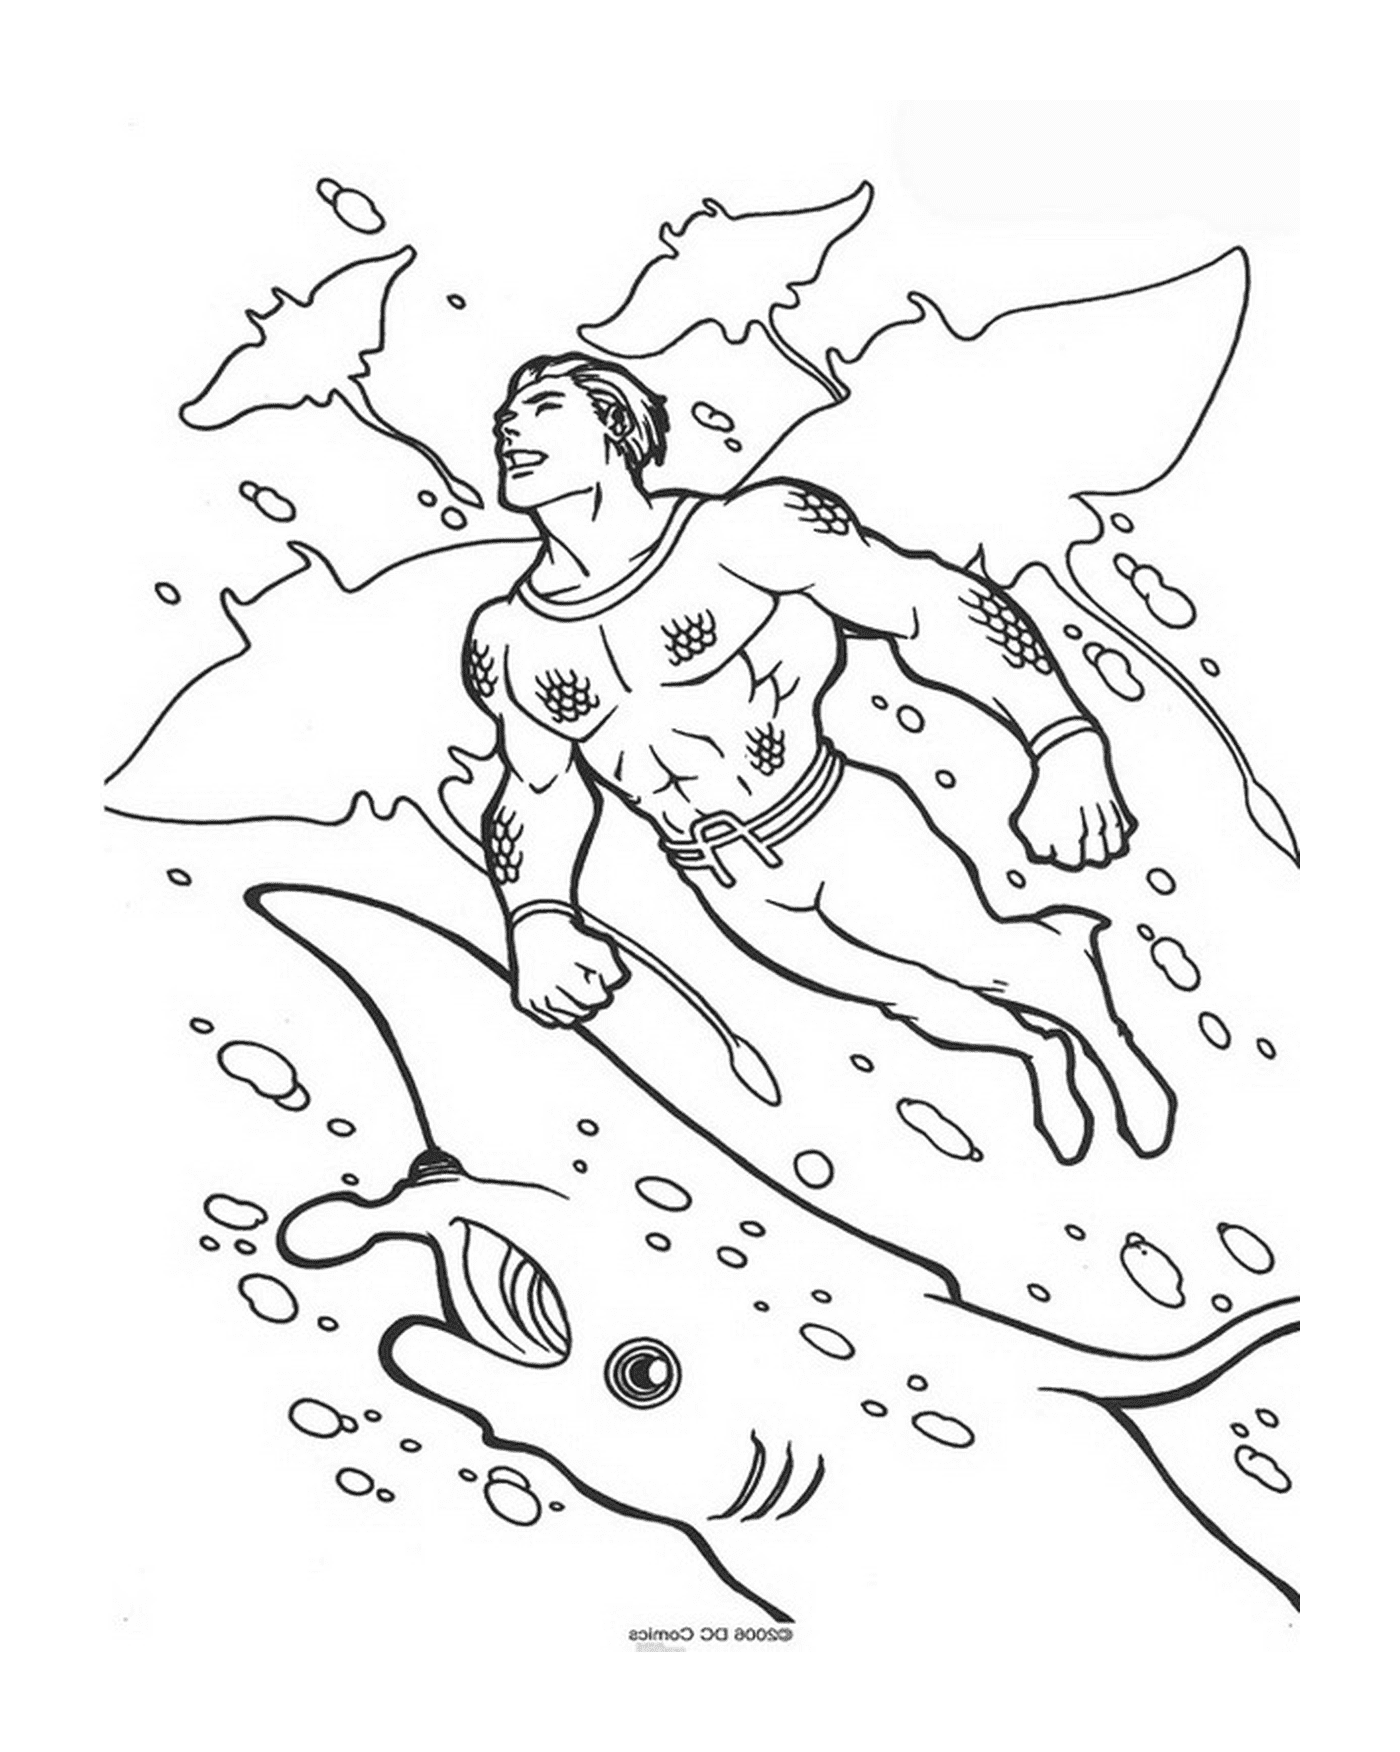   Un homme nageant dans l'océan 